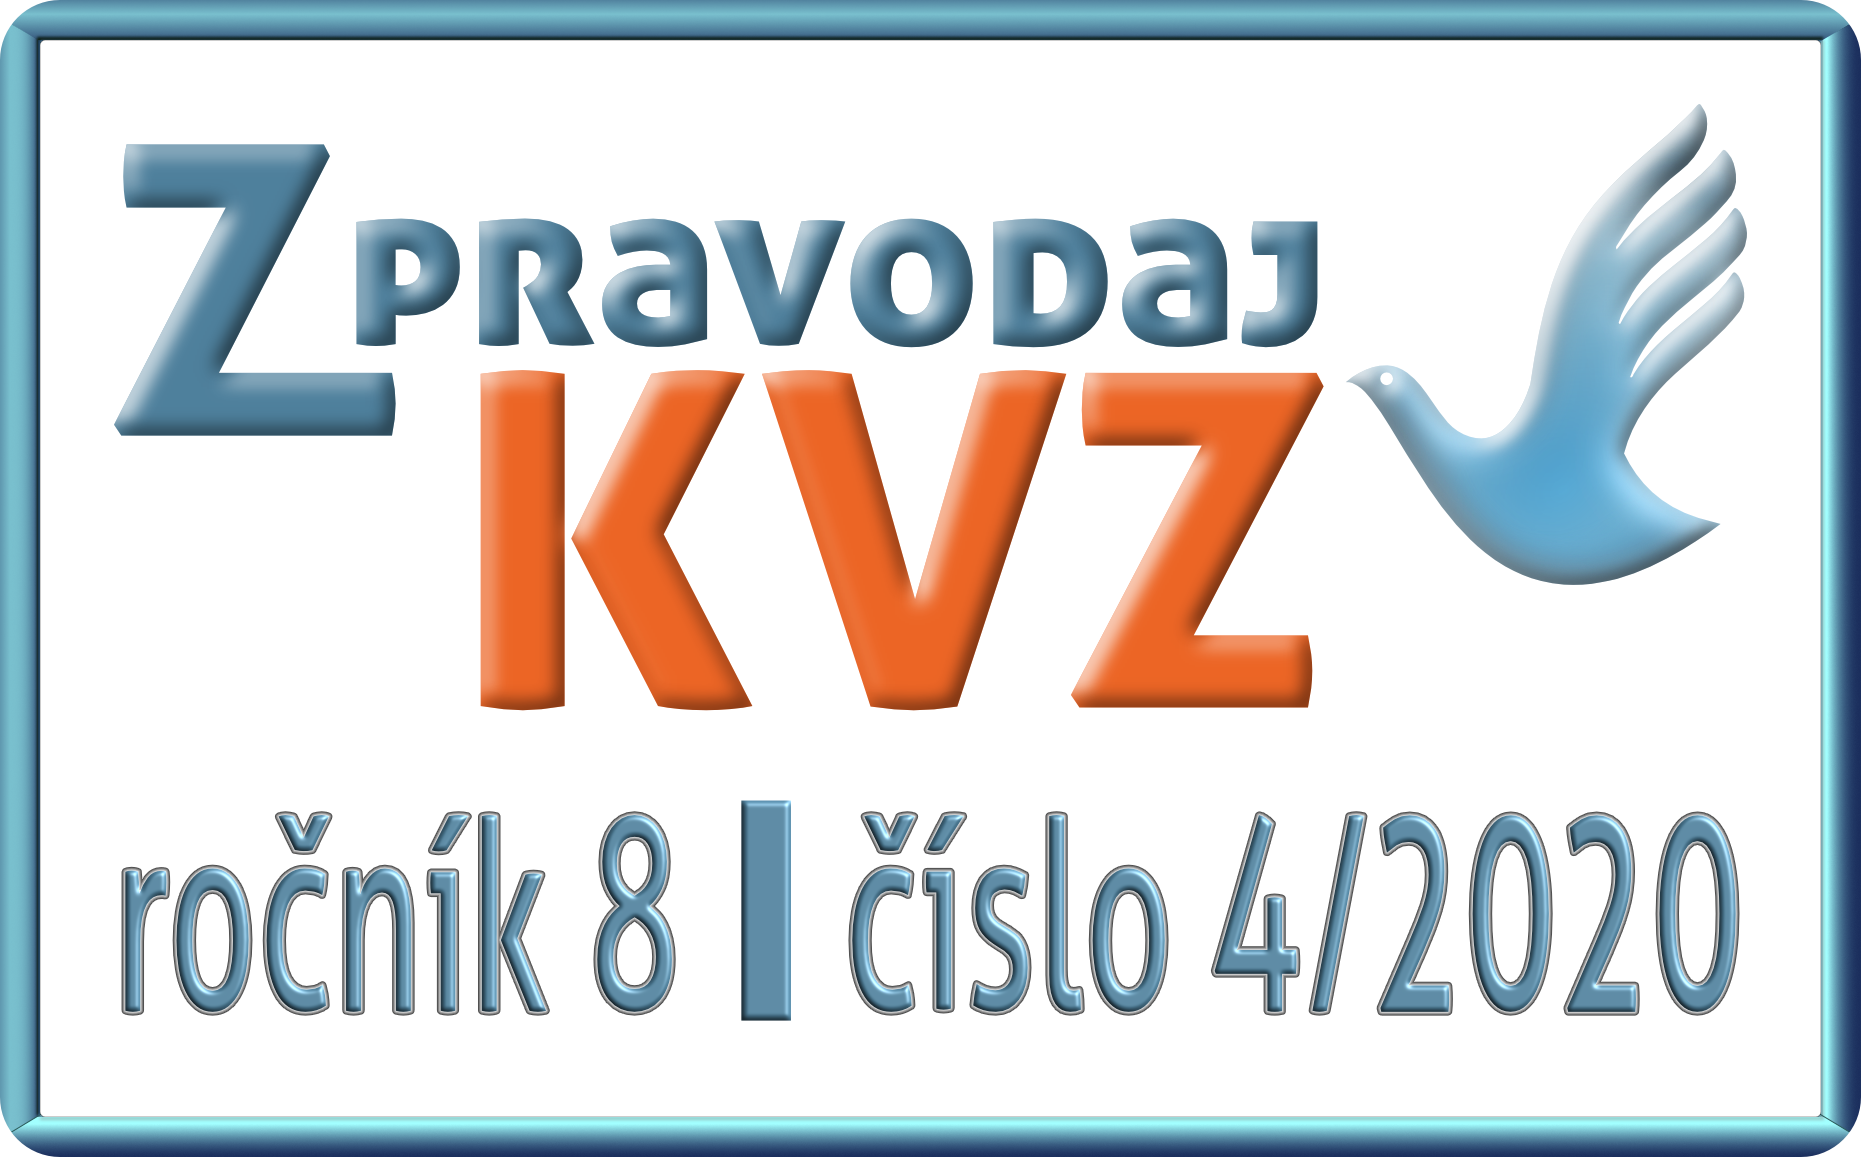 Zpravodaj_KVZ_04_2020